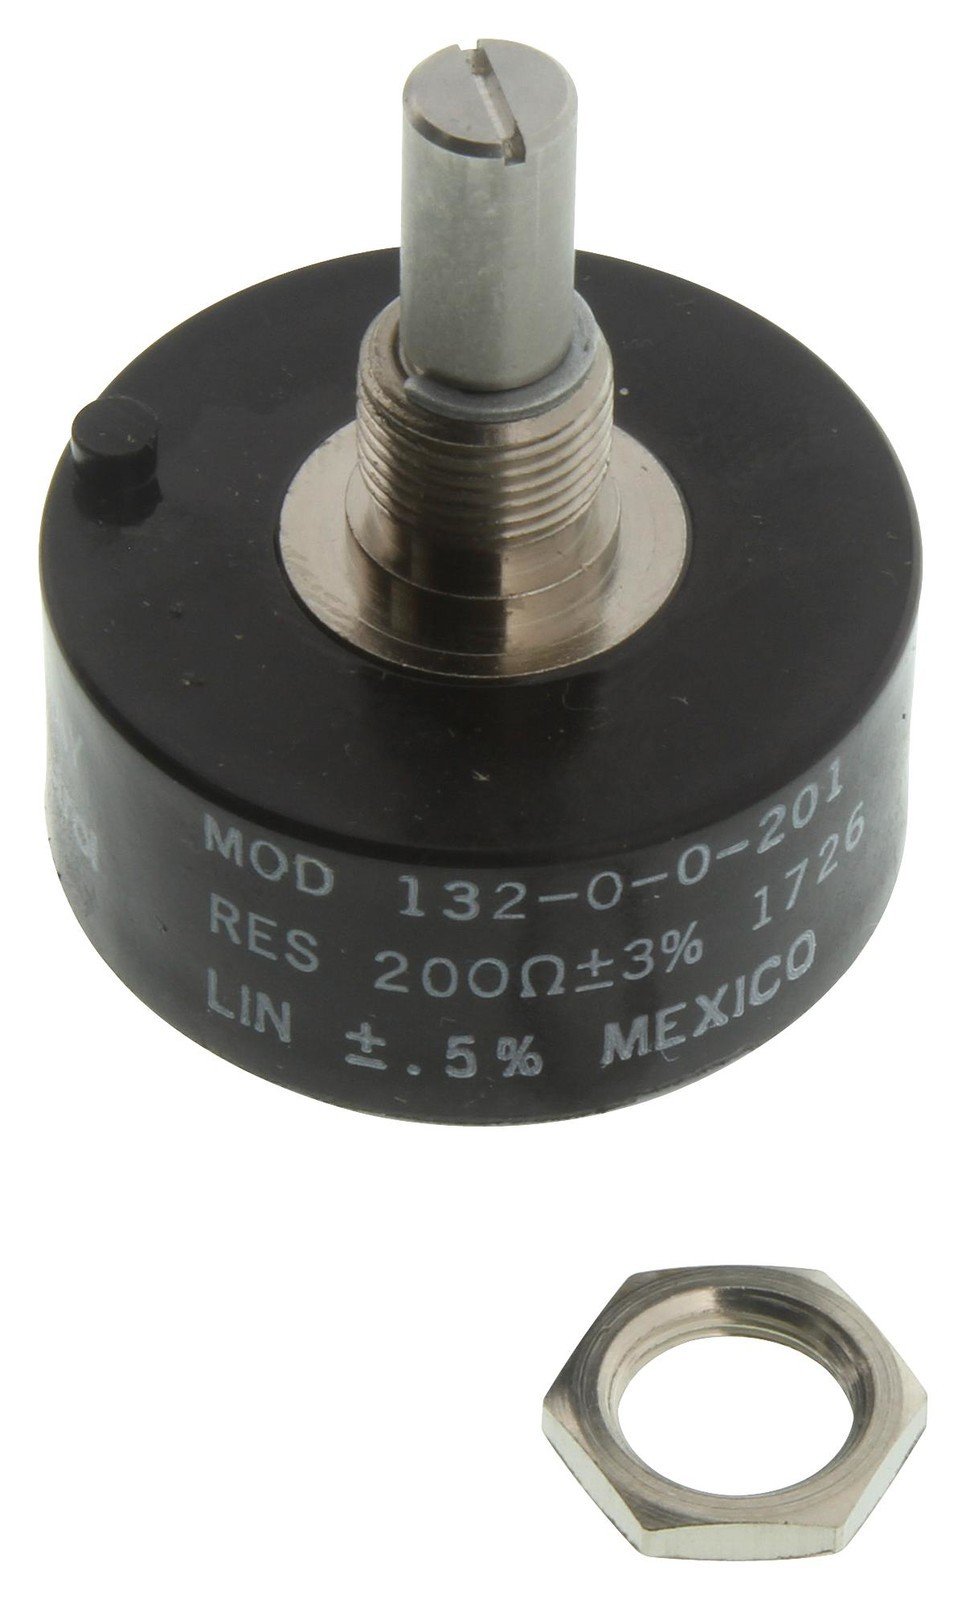 Vishay 132-0-0-201 Wirewound Potentiometer